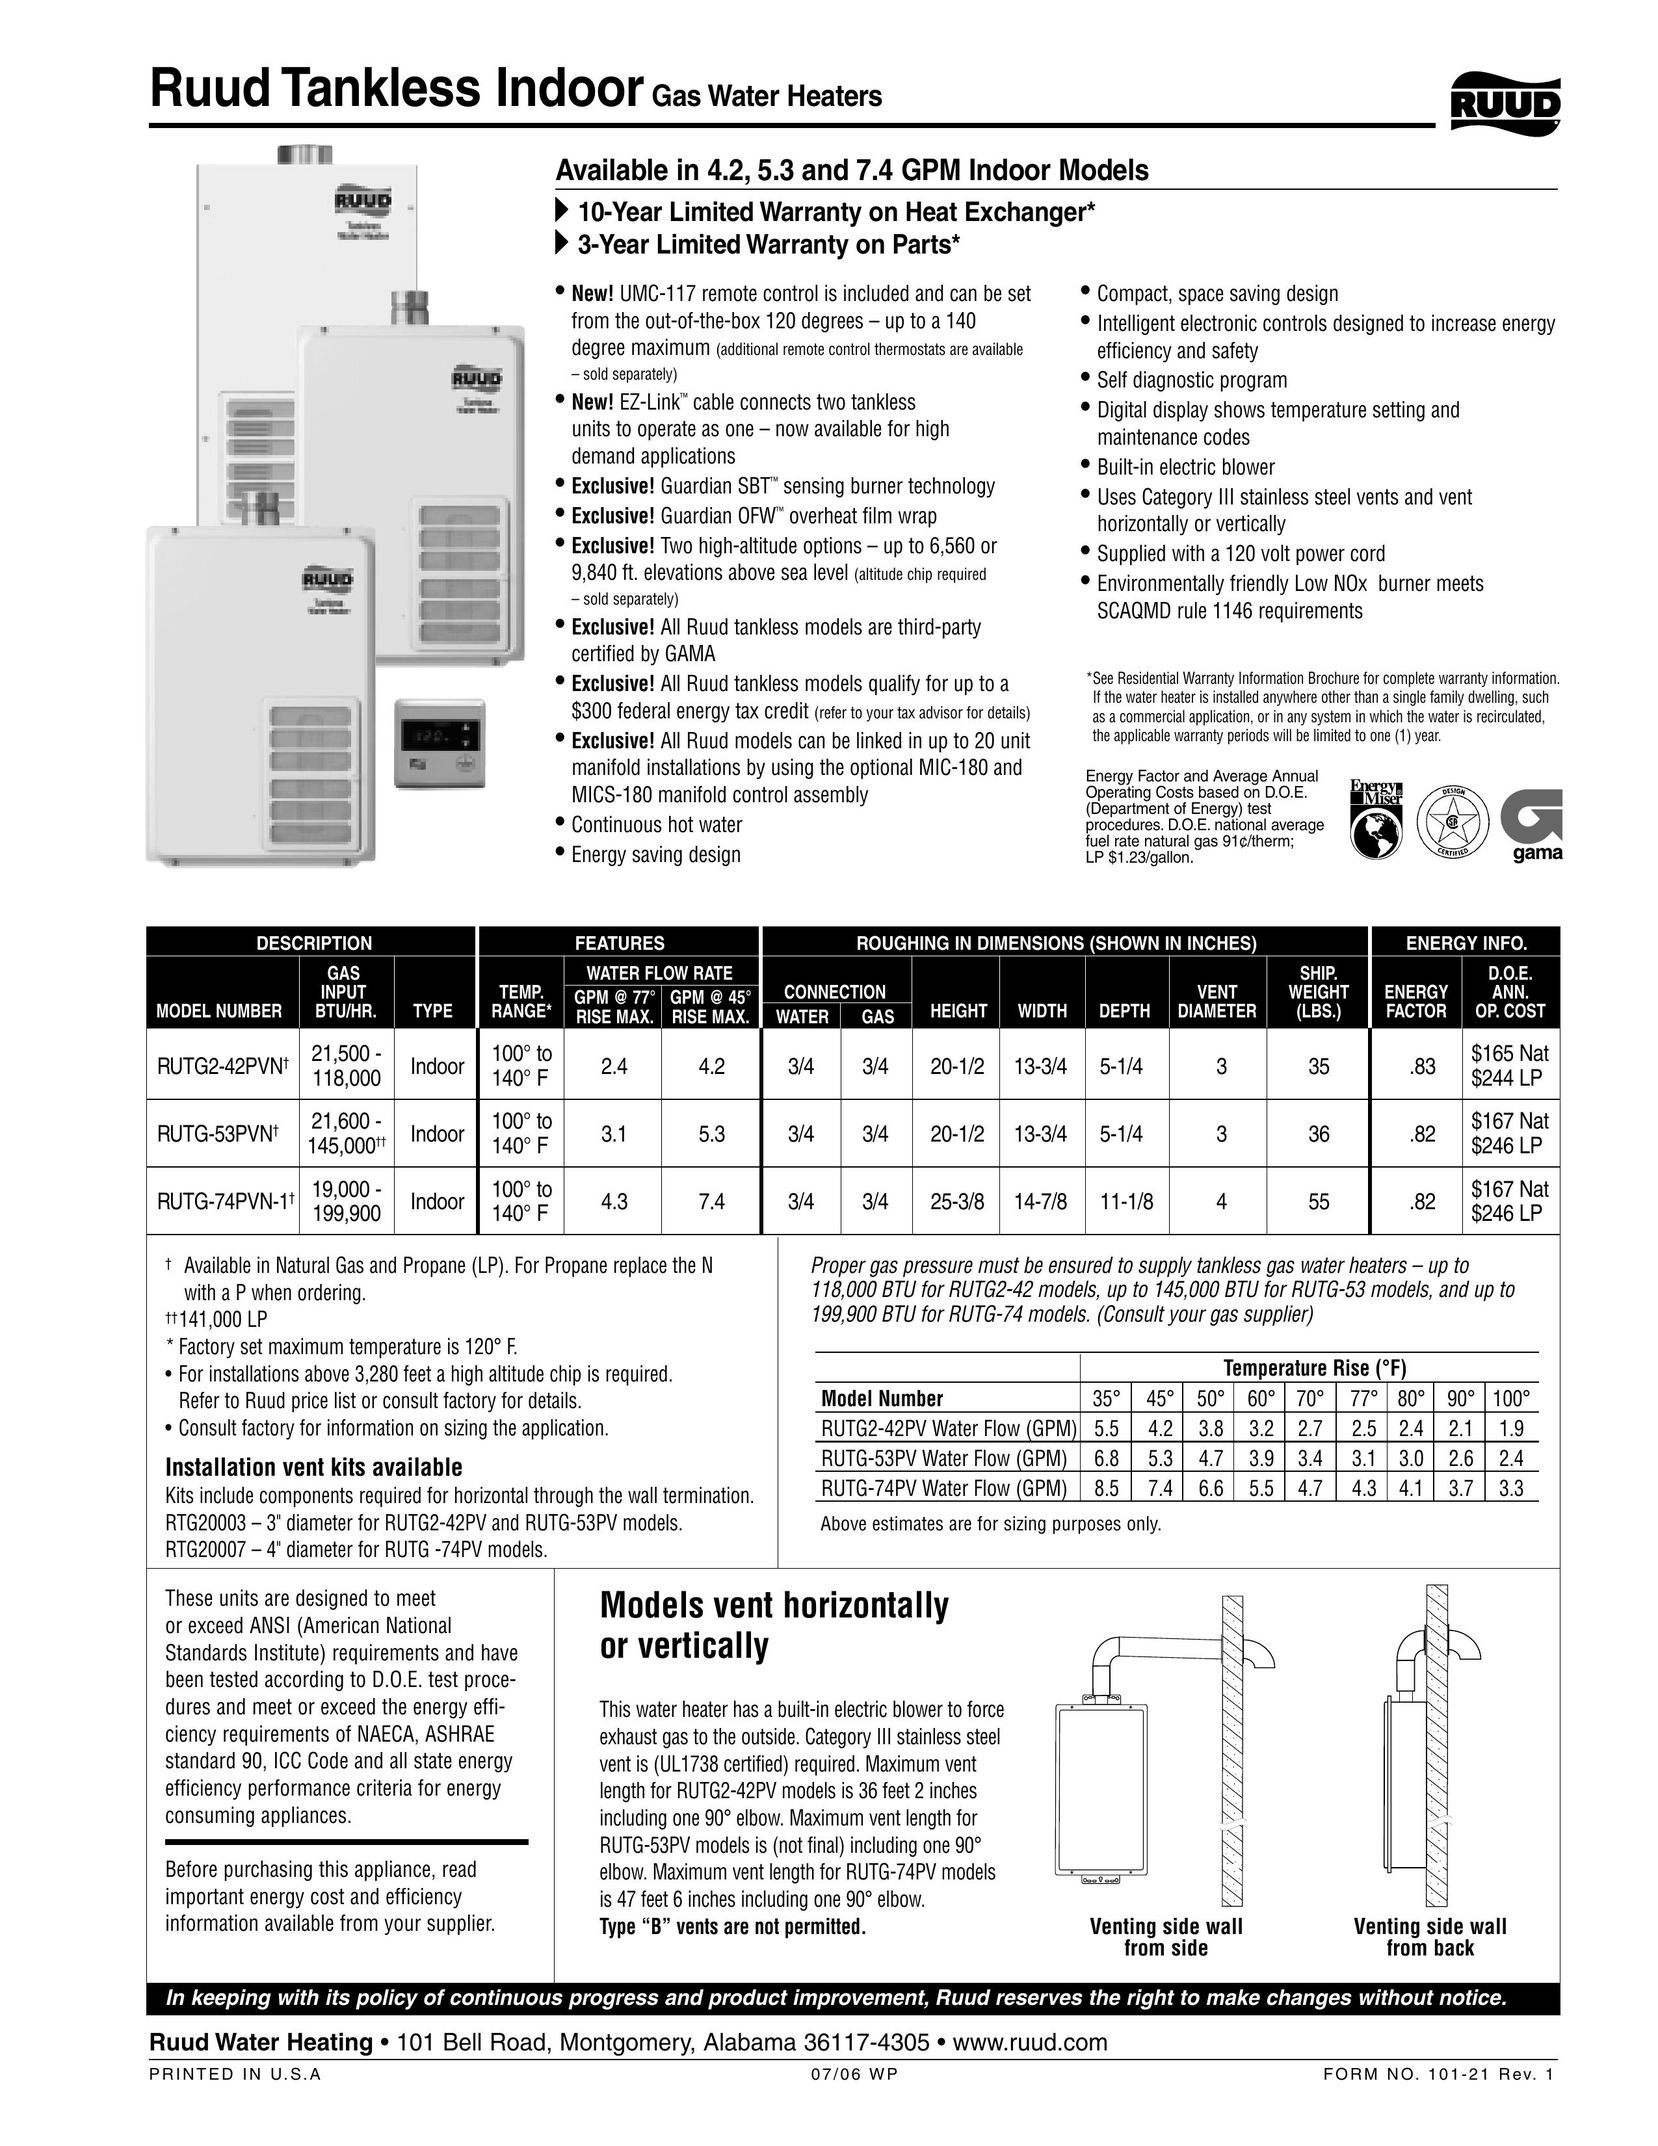 Ruud RUTG-74PV Water Heater User Manual